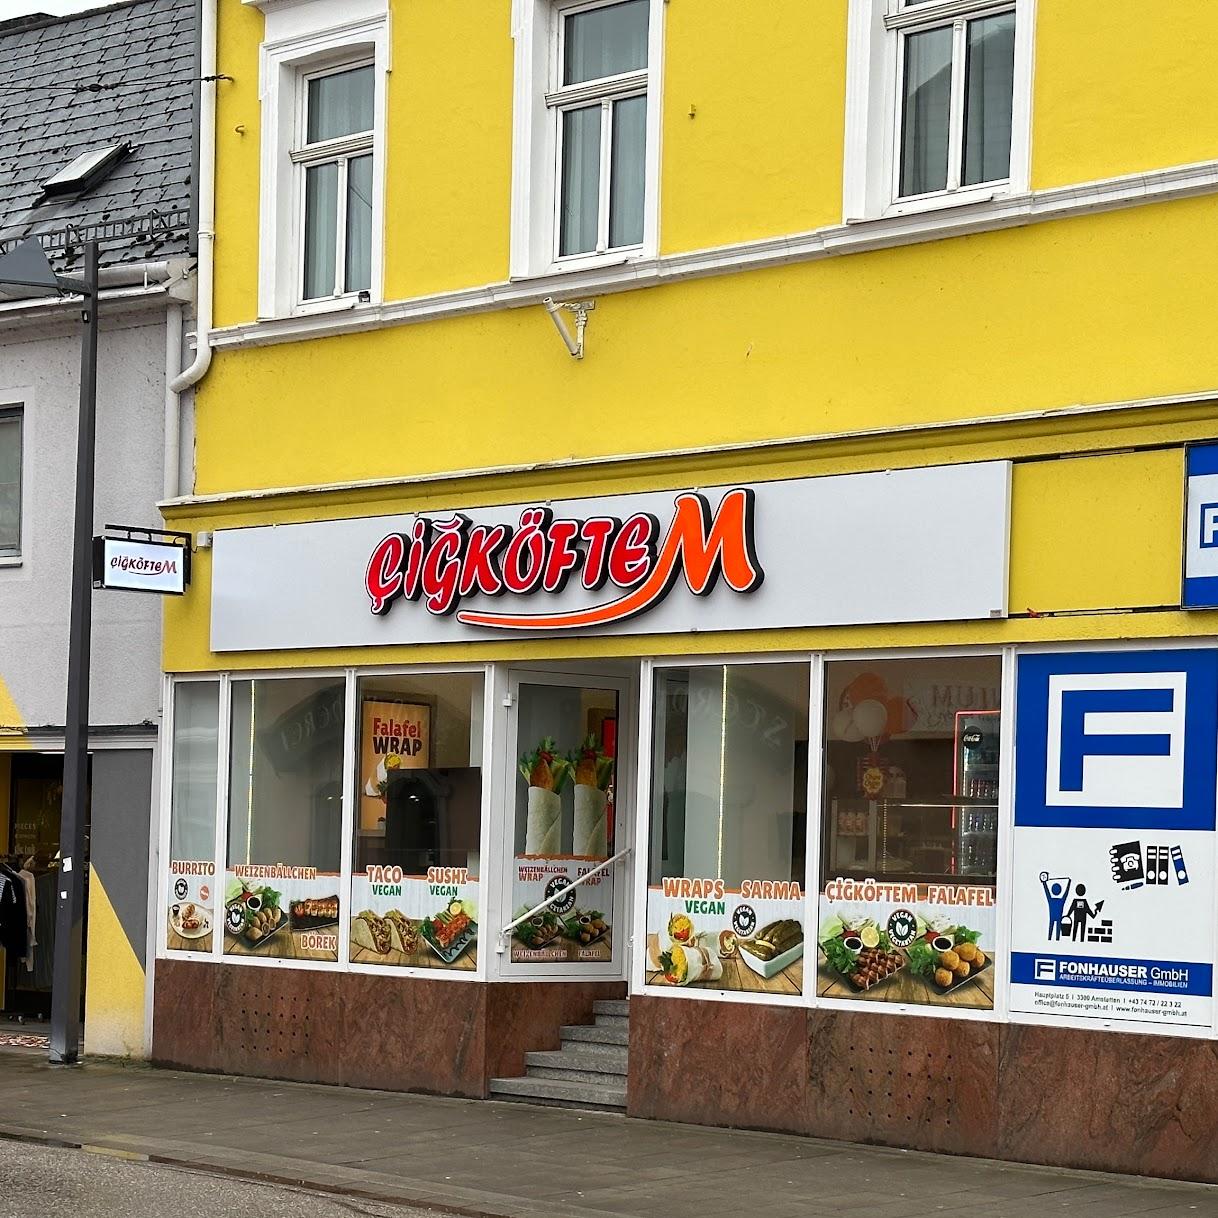 Restaurant "Cigköftem" in Amstetten